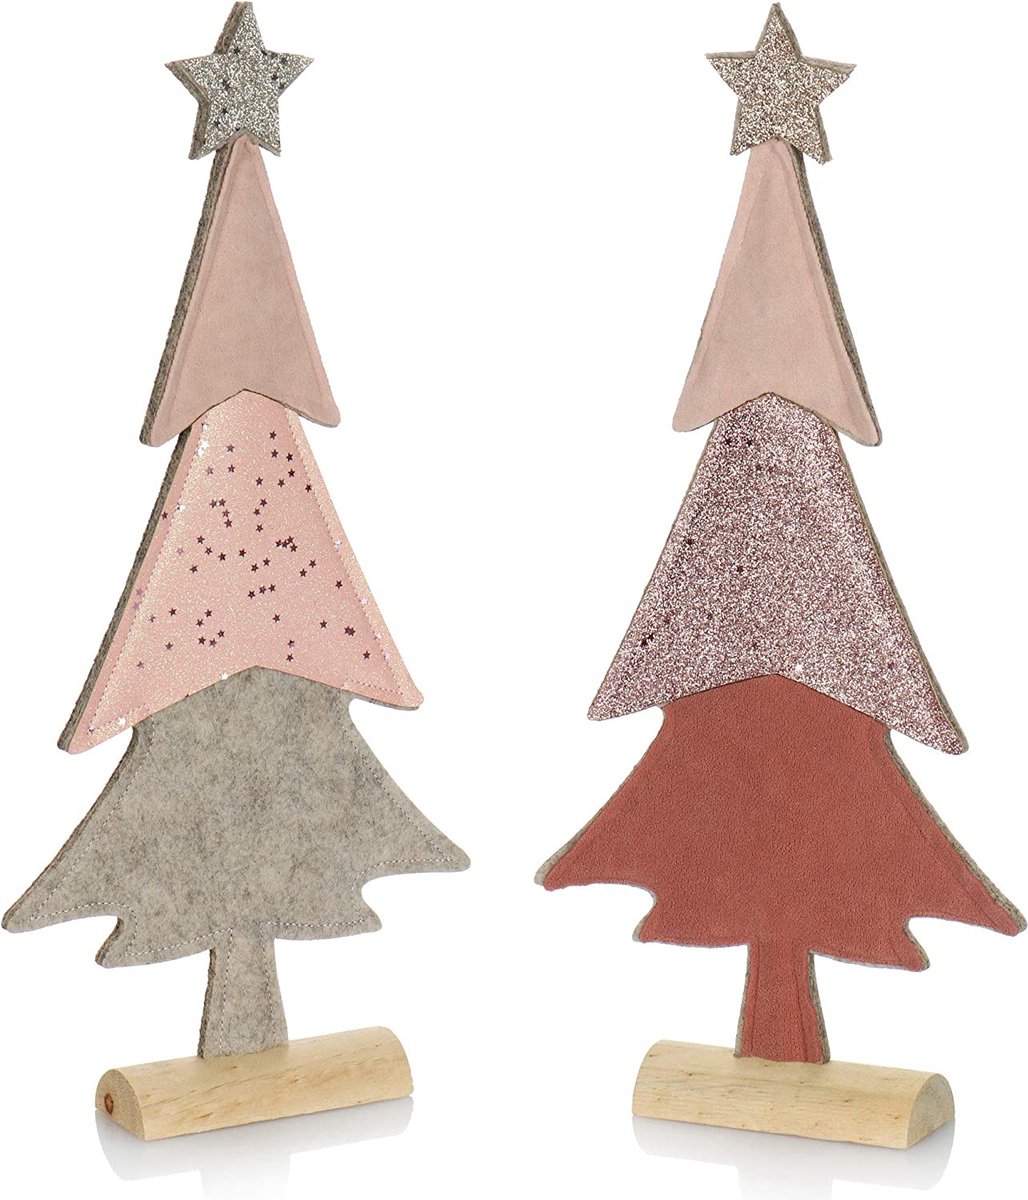 decoratieve display voor Kerstmis - Kerstboom van vilt met massief houten voet - Kerstboom als decoratie of cadeau